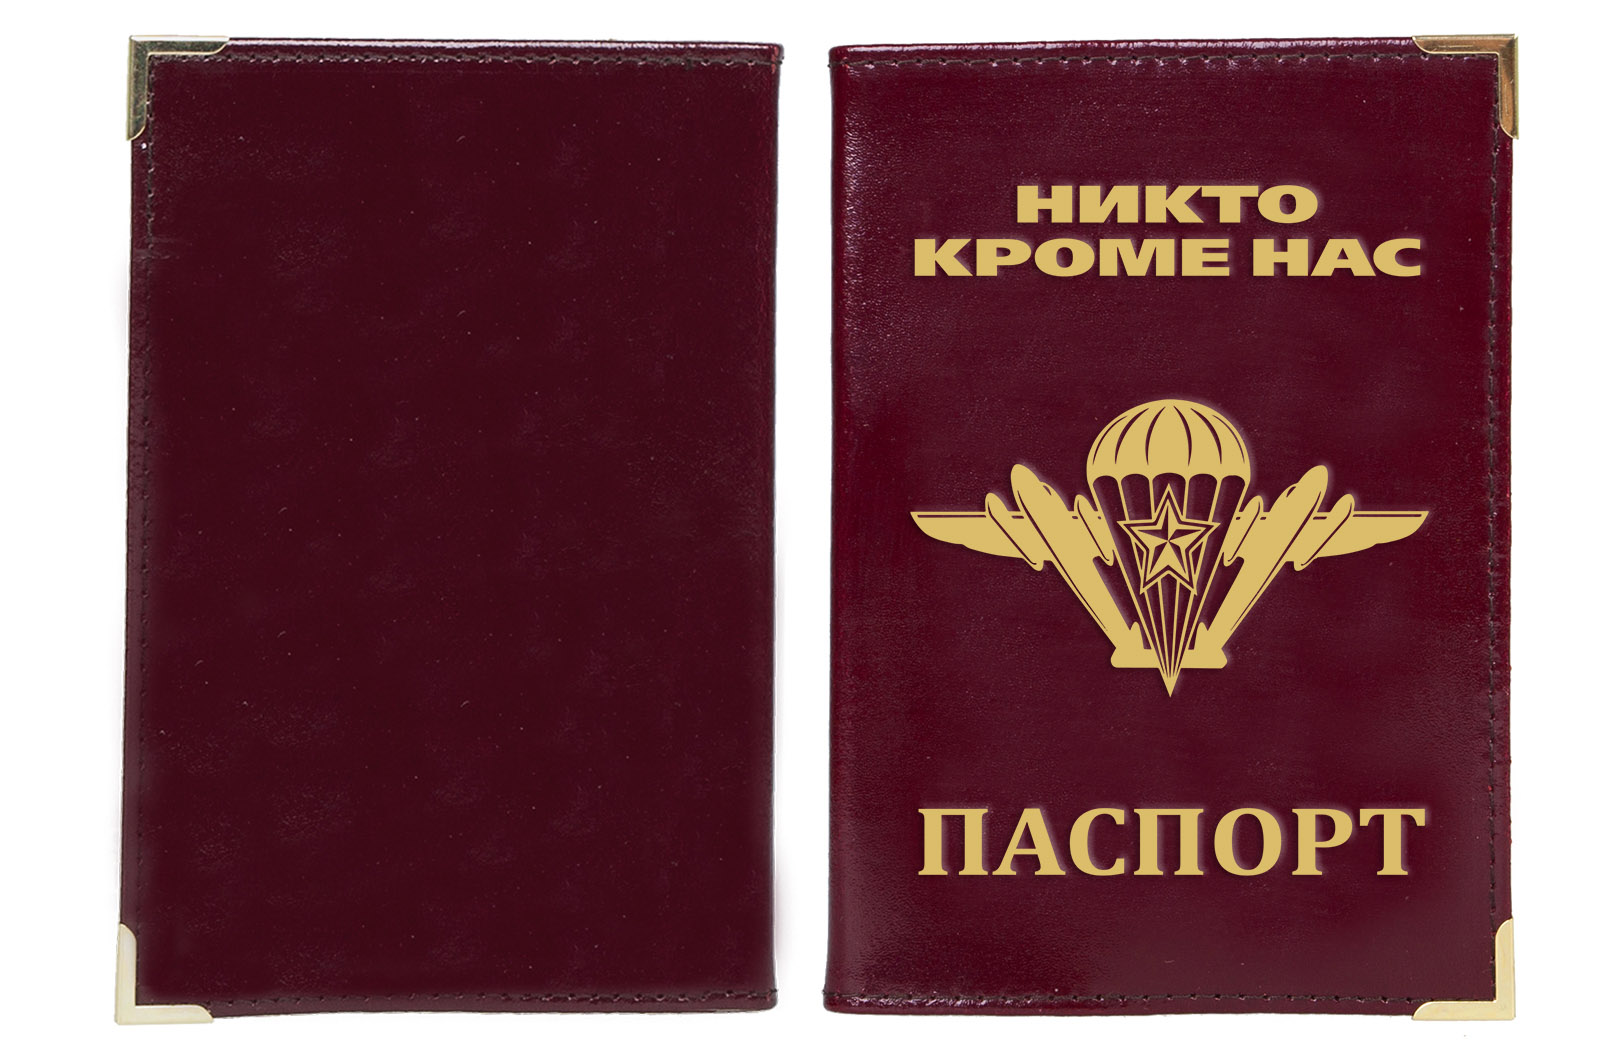 Купить обложку на паспорт "За ВДВ"